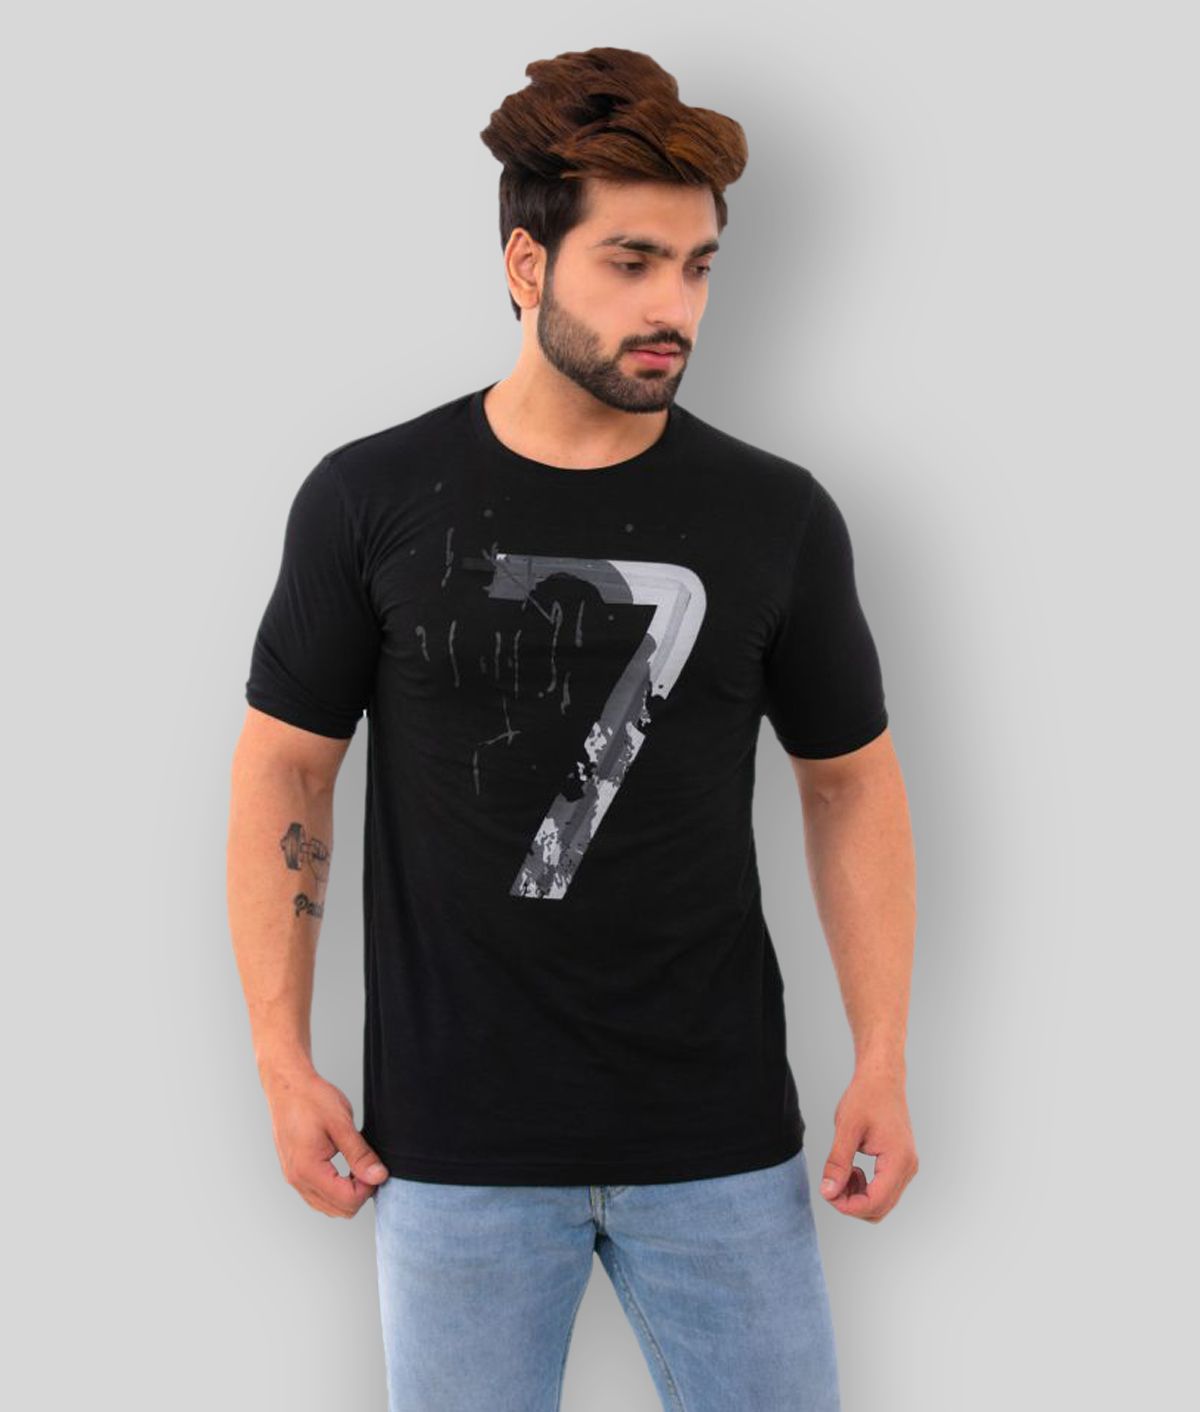     			BISHOPCOTTON - Black Cotton Blend Regular Fit  Men's T-Shirt ( Pack of 1 )